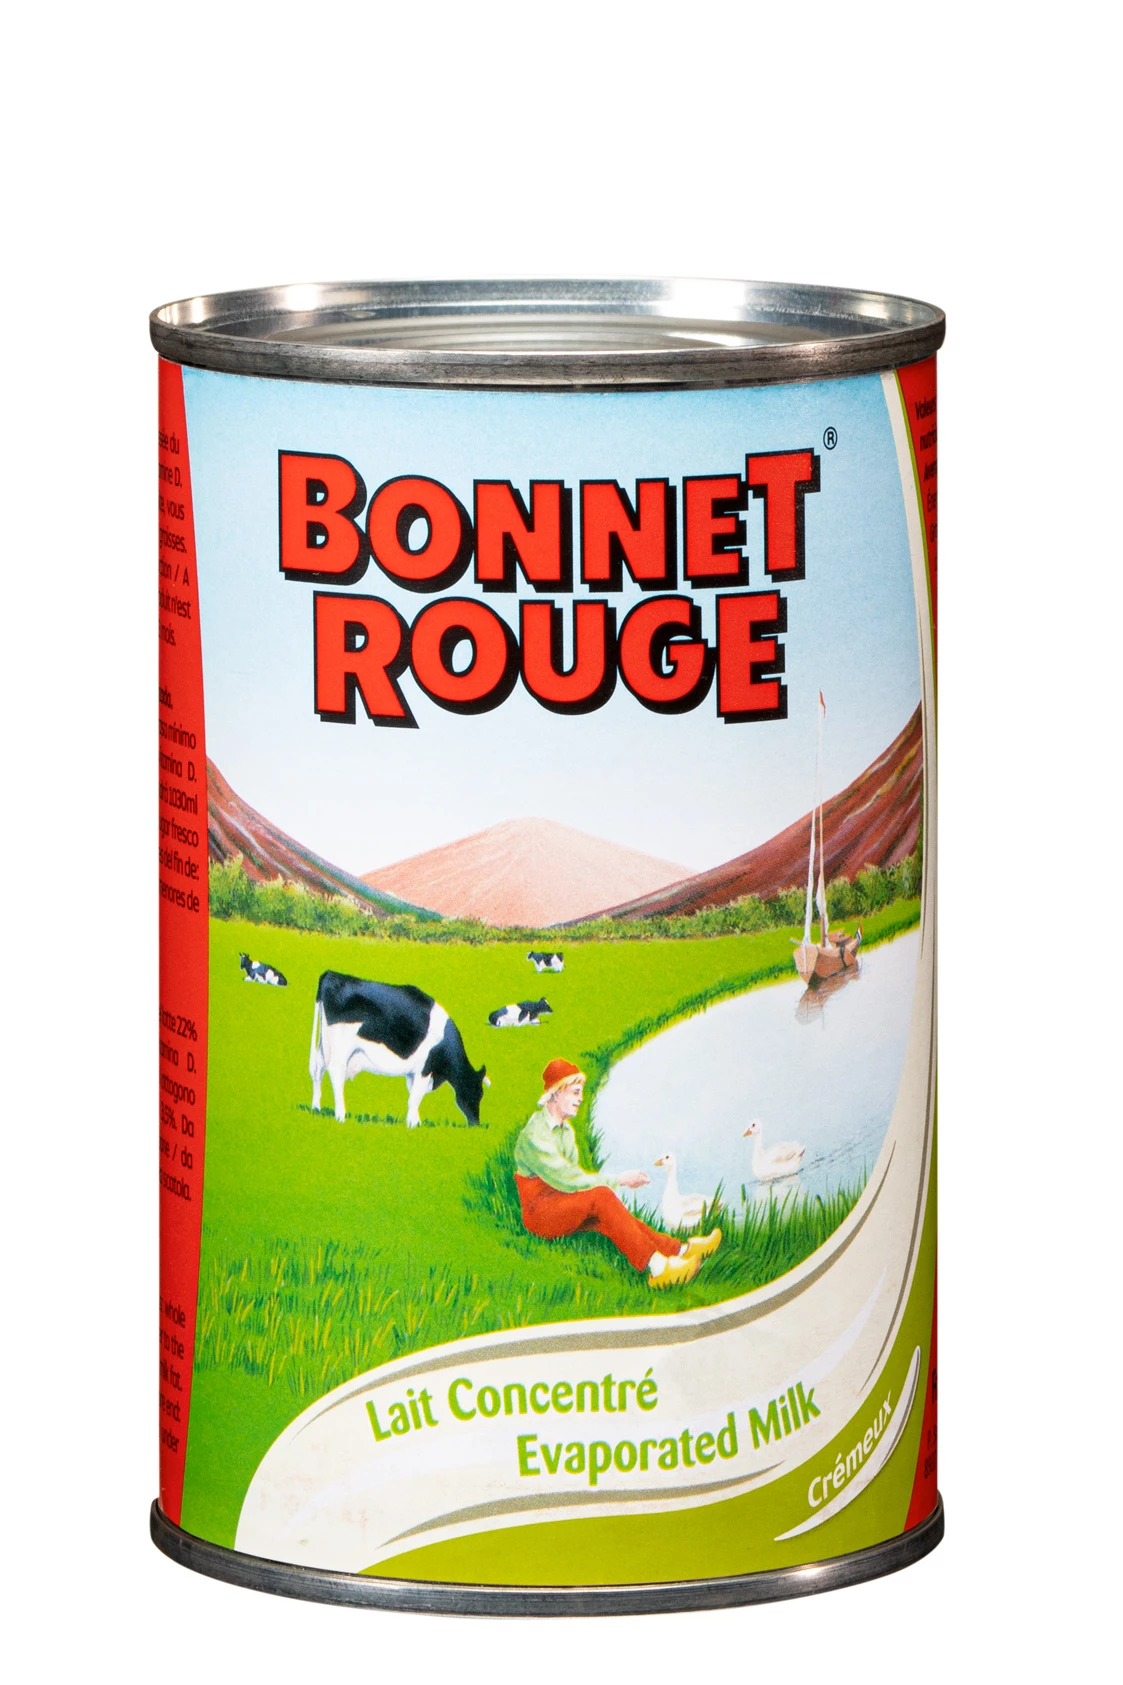 Unsweetened Condensed Milk Bonnet 410g - Bonnet Rouge